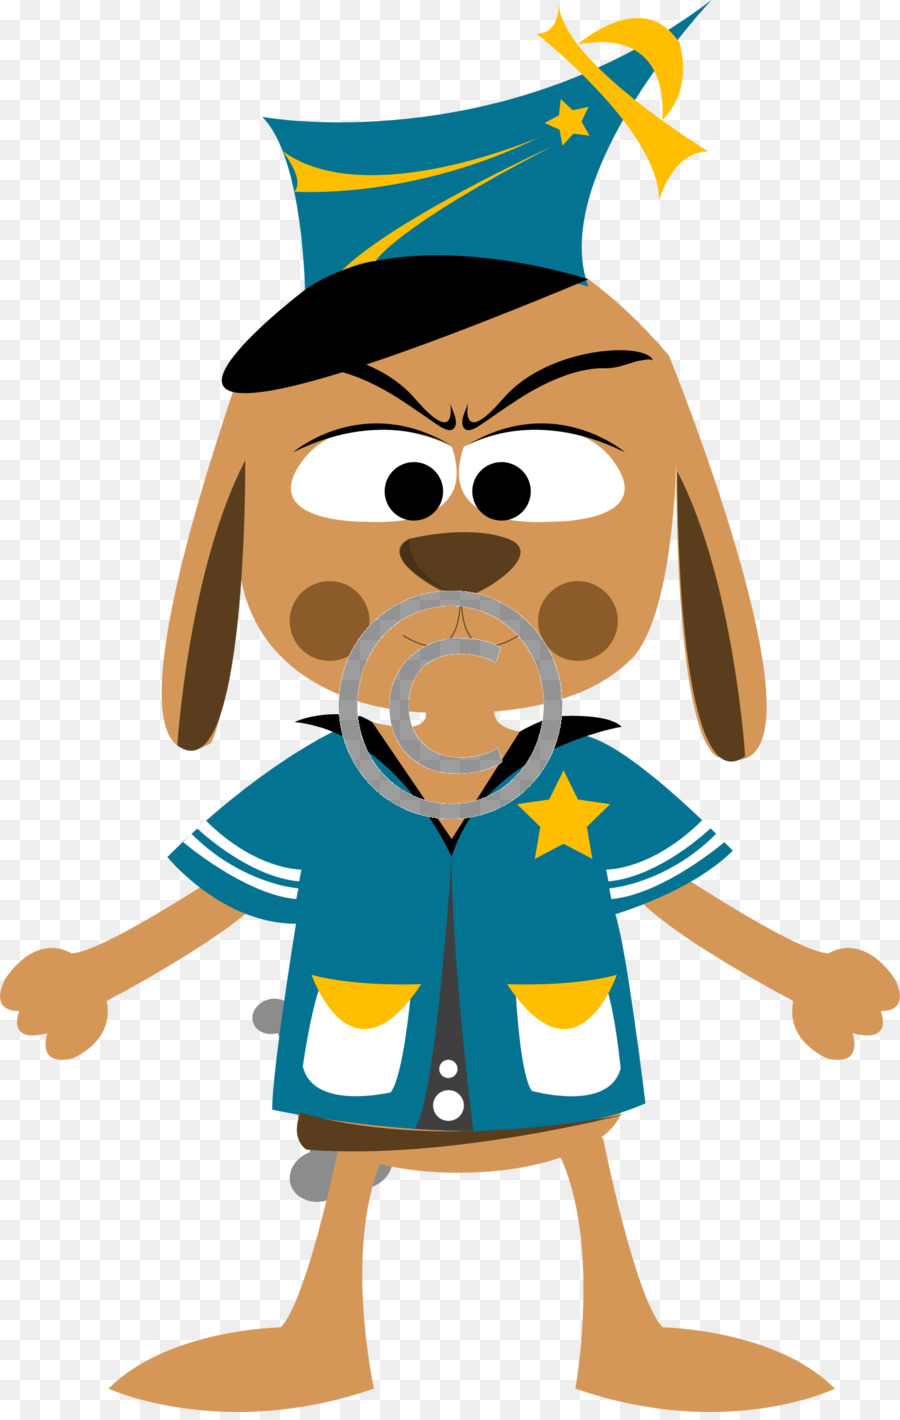 Pastore tedesco di ufficiale di Polizia di Polizia cane Clip art - personaggi dei fumetti